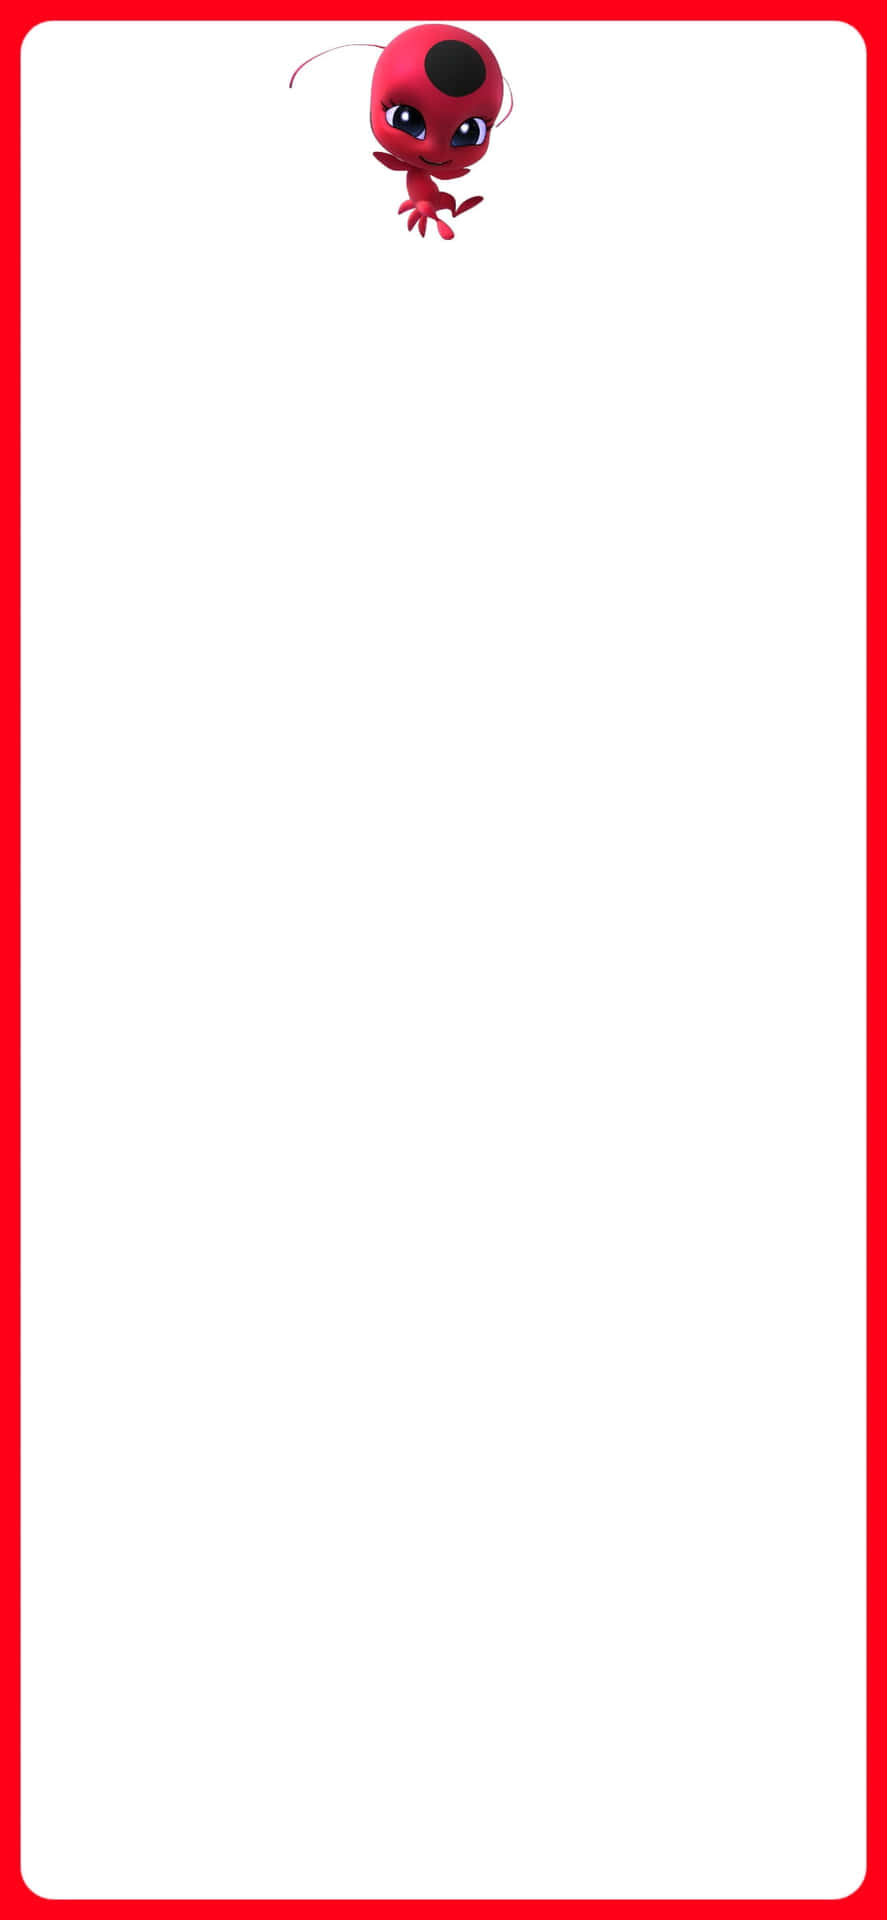 En rød og hvid ramme med en rød og hvid monster. Wallpaper